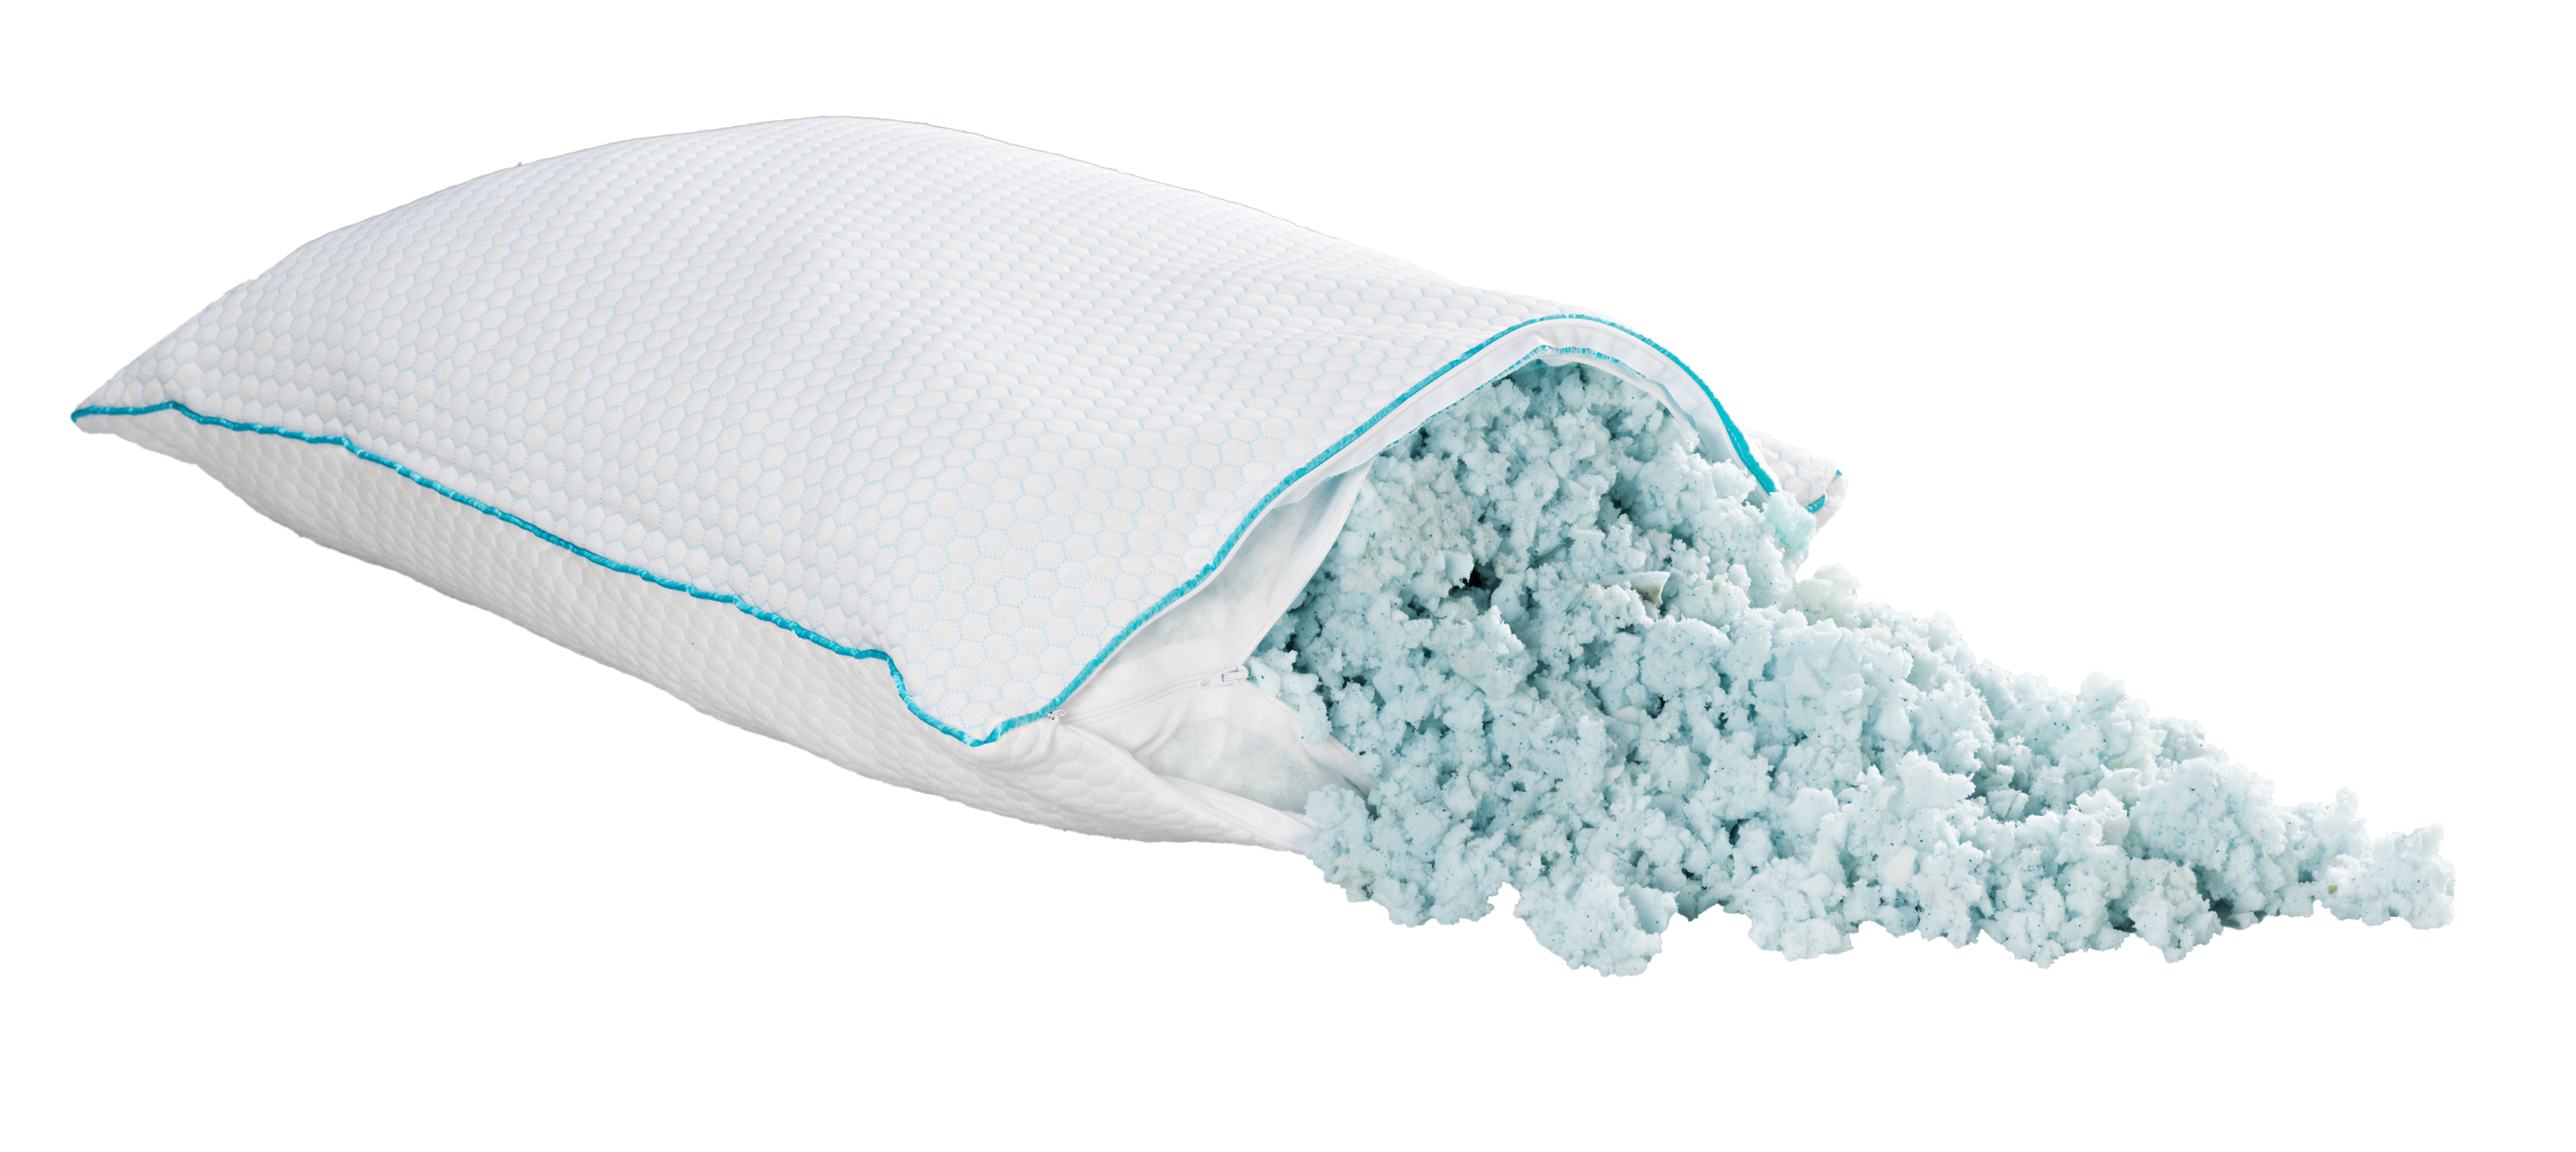 Image of a Zeek Ice Pillow.